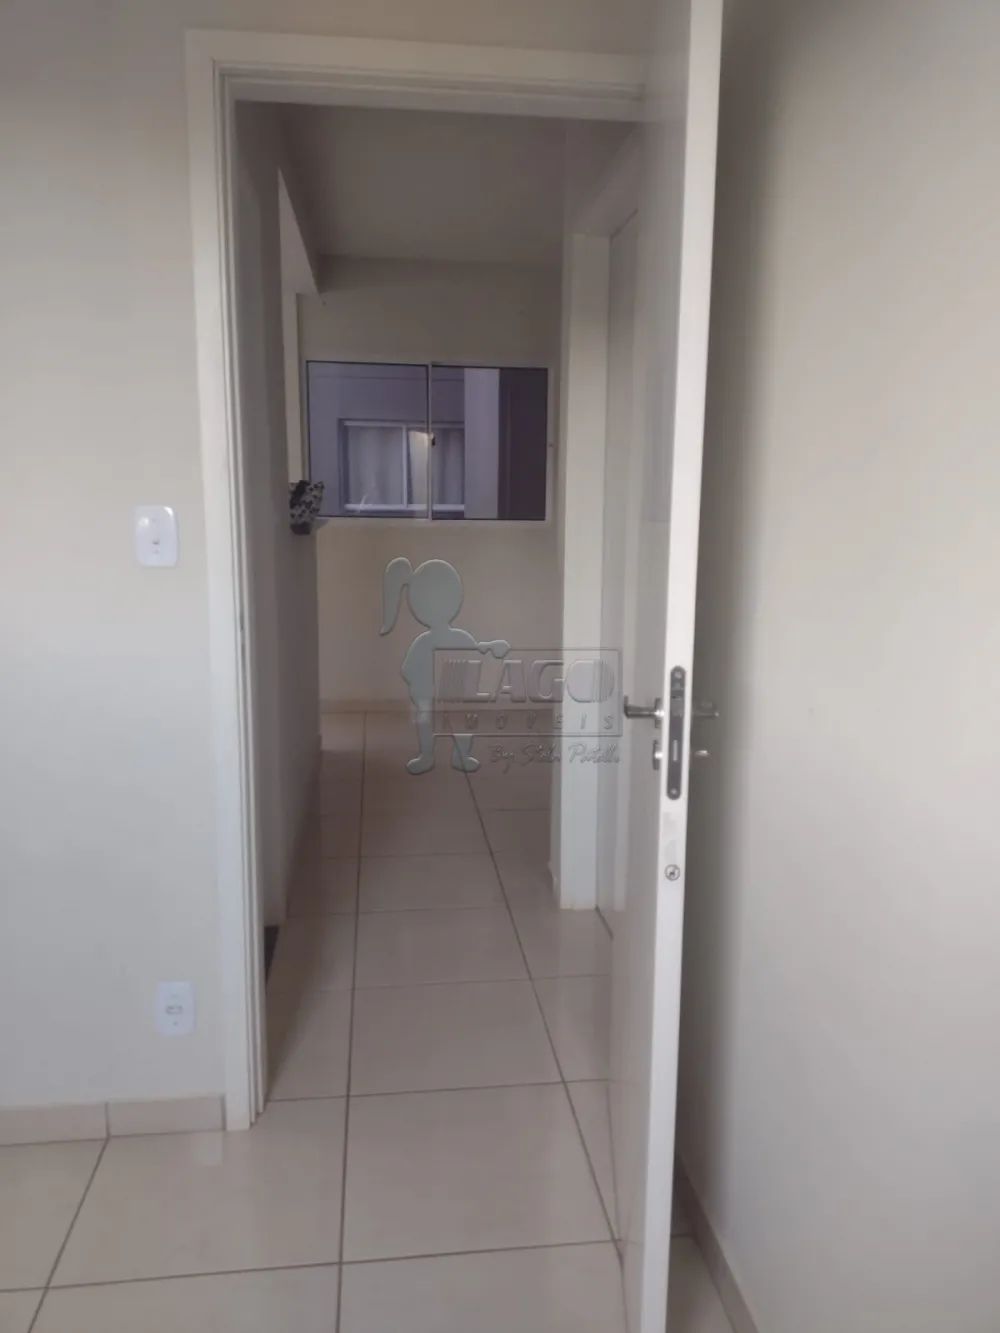 Comprar Apartamentos / Padrão em Ribeirão Preto R$ 212.000,00 - Foto 10